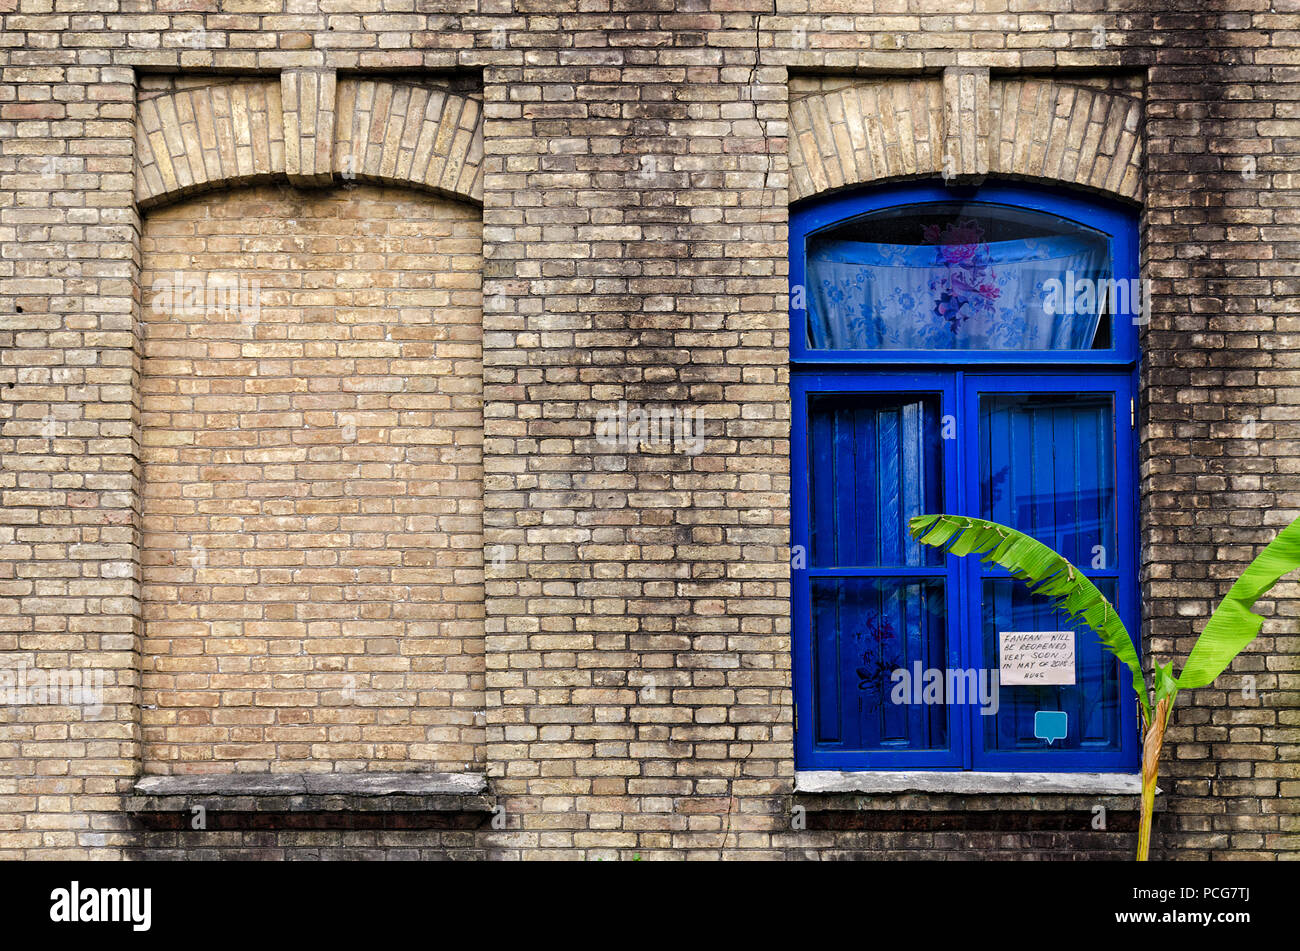 Alte Mauer mit zwei Fenstern, eine falsche, andere mit Glas und Farbe blau Rahmen, grüne Pflanze in der Nähe der Gebäude. Batumi, Georgia. Stockfoto